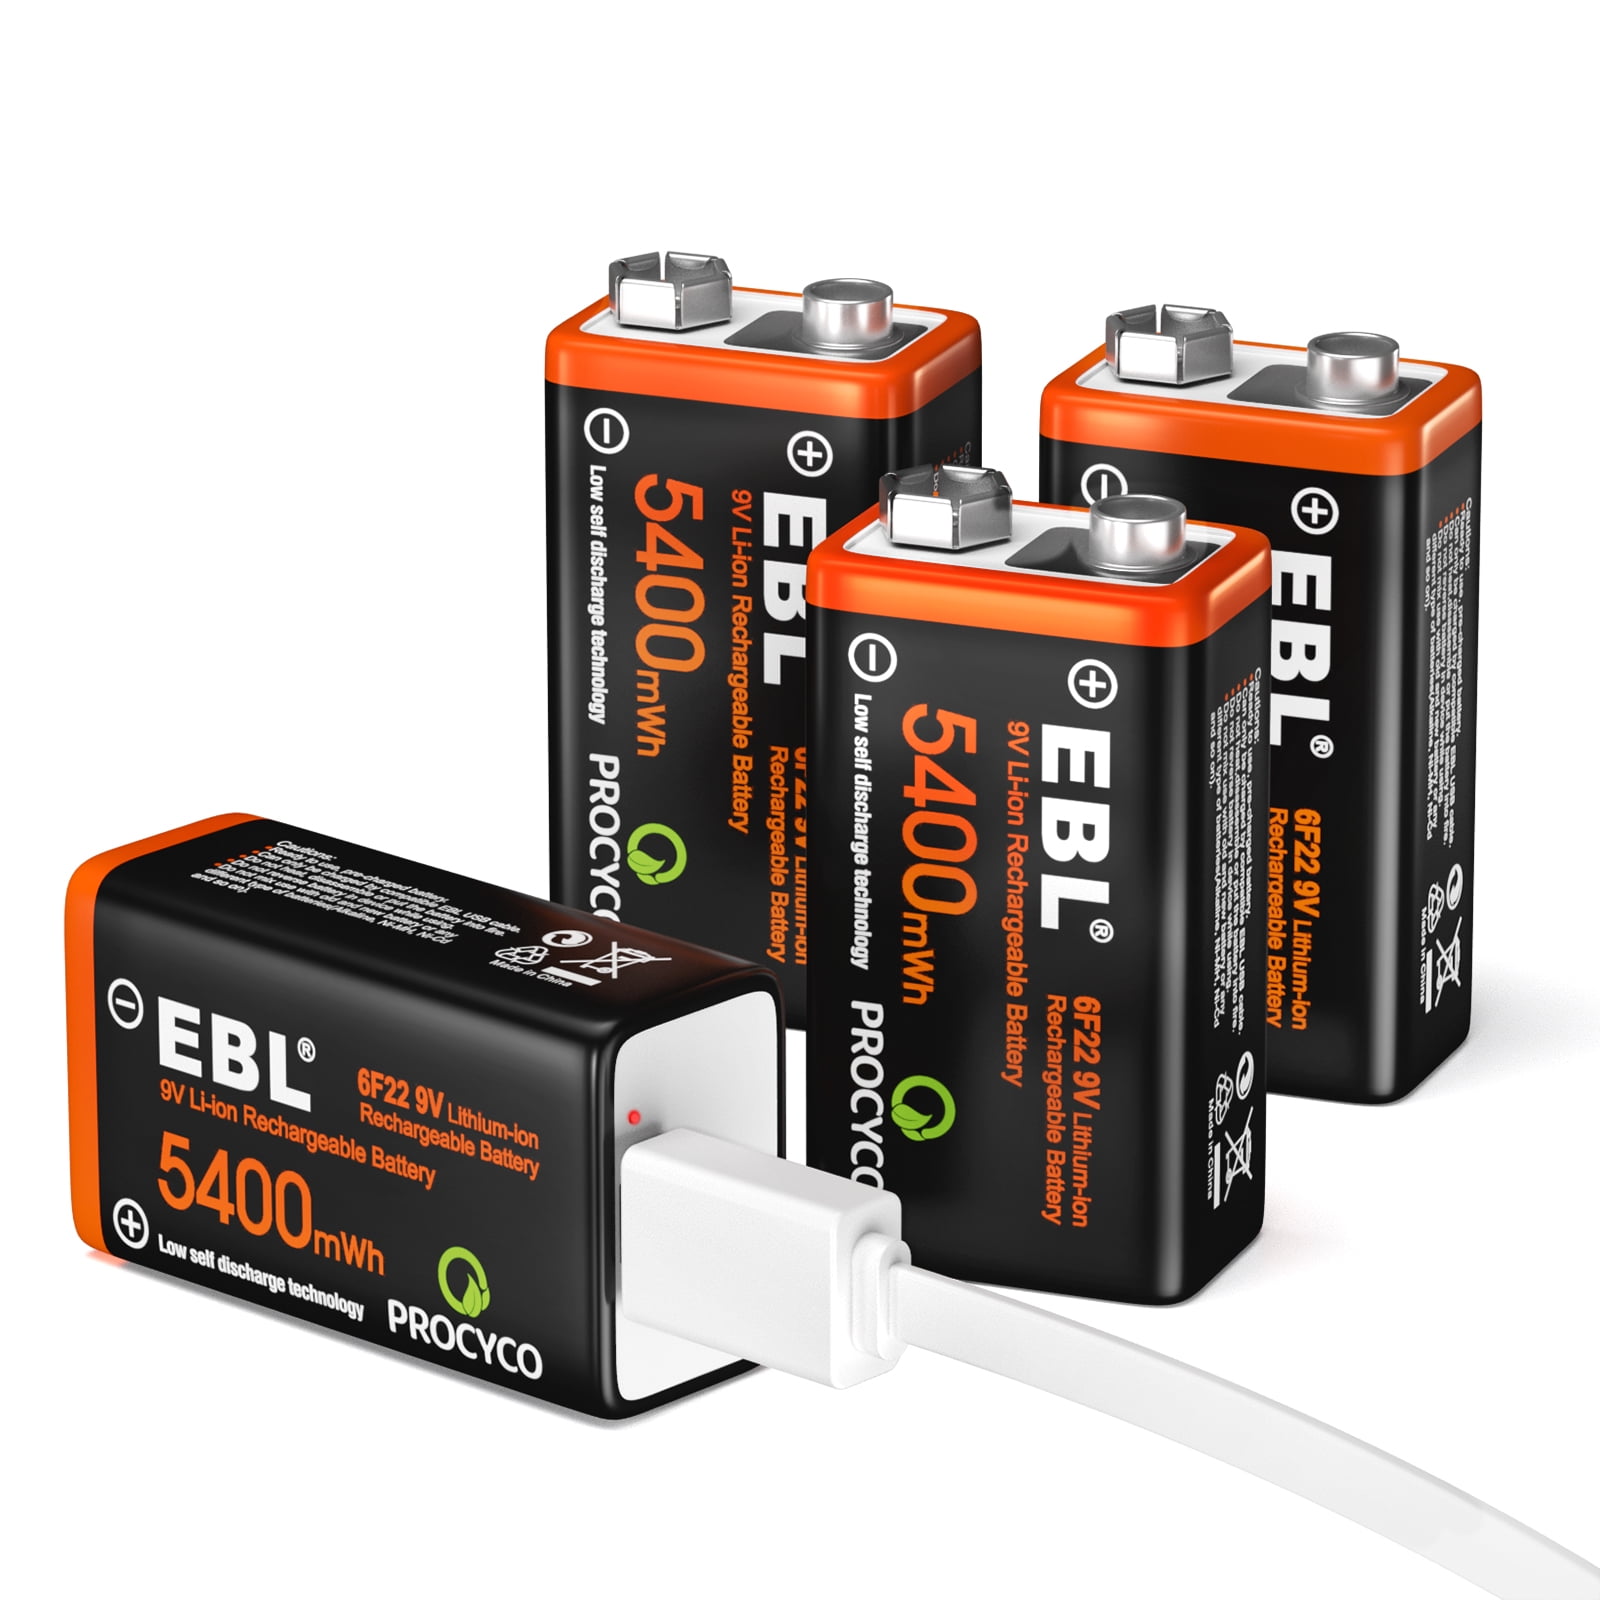 EBL Baterías Recargables 9V USB